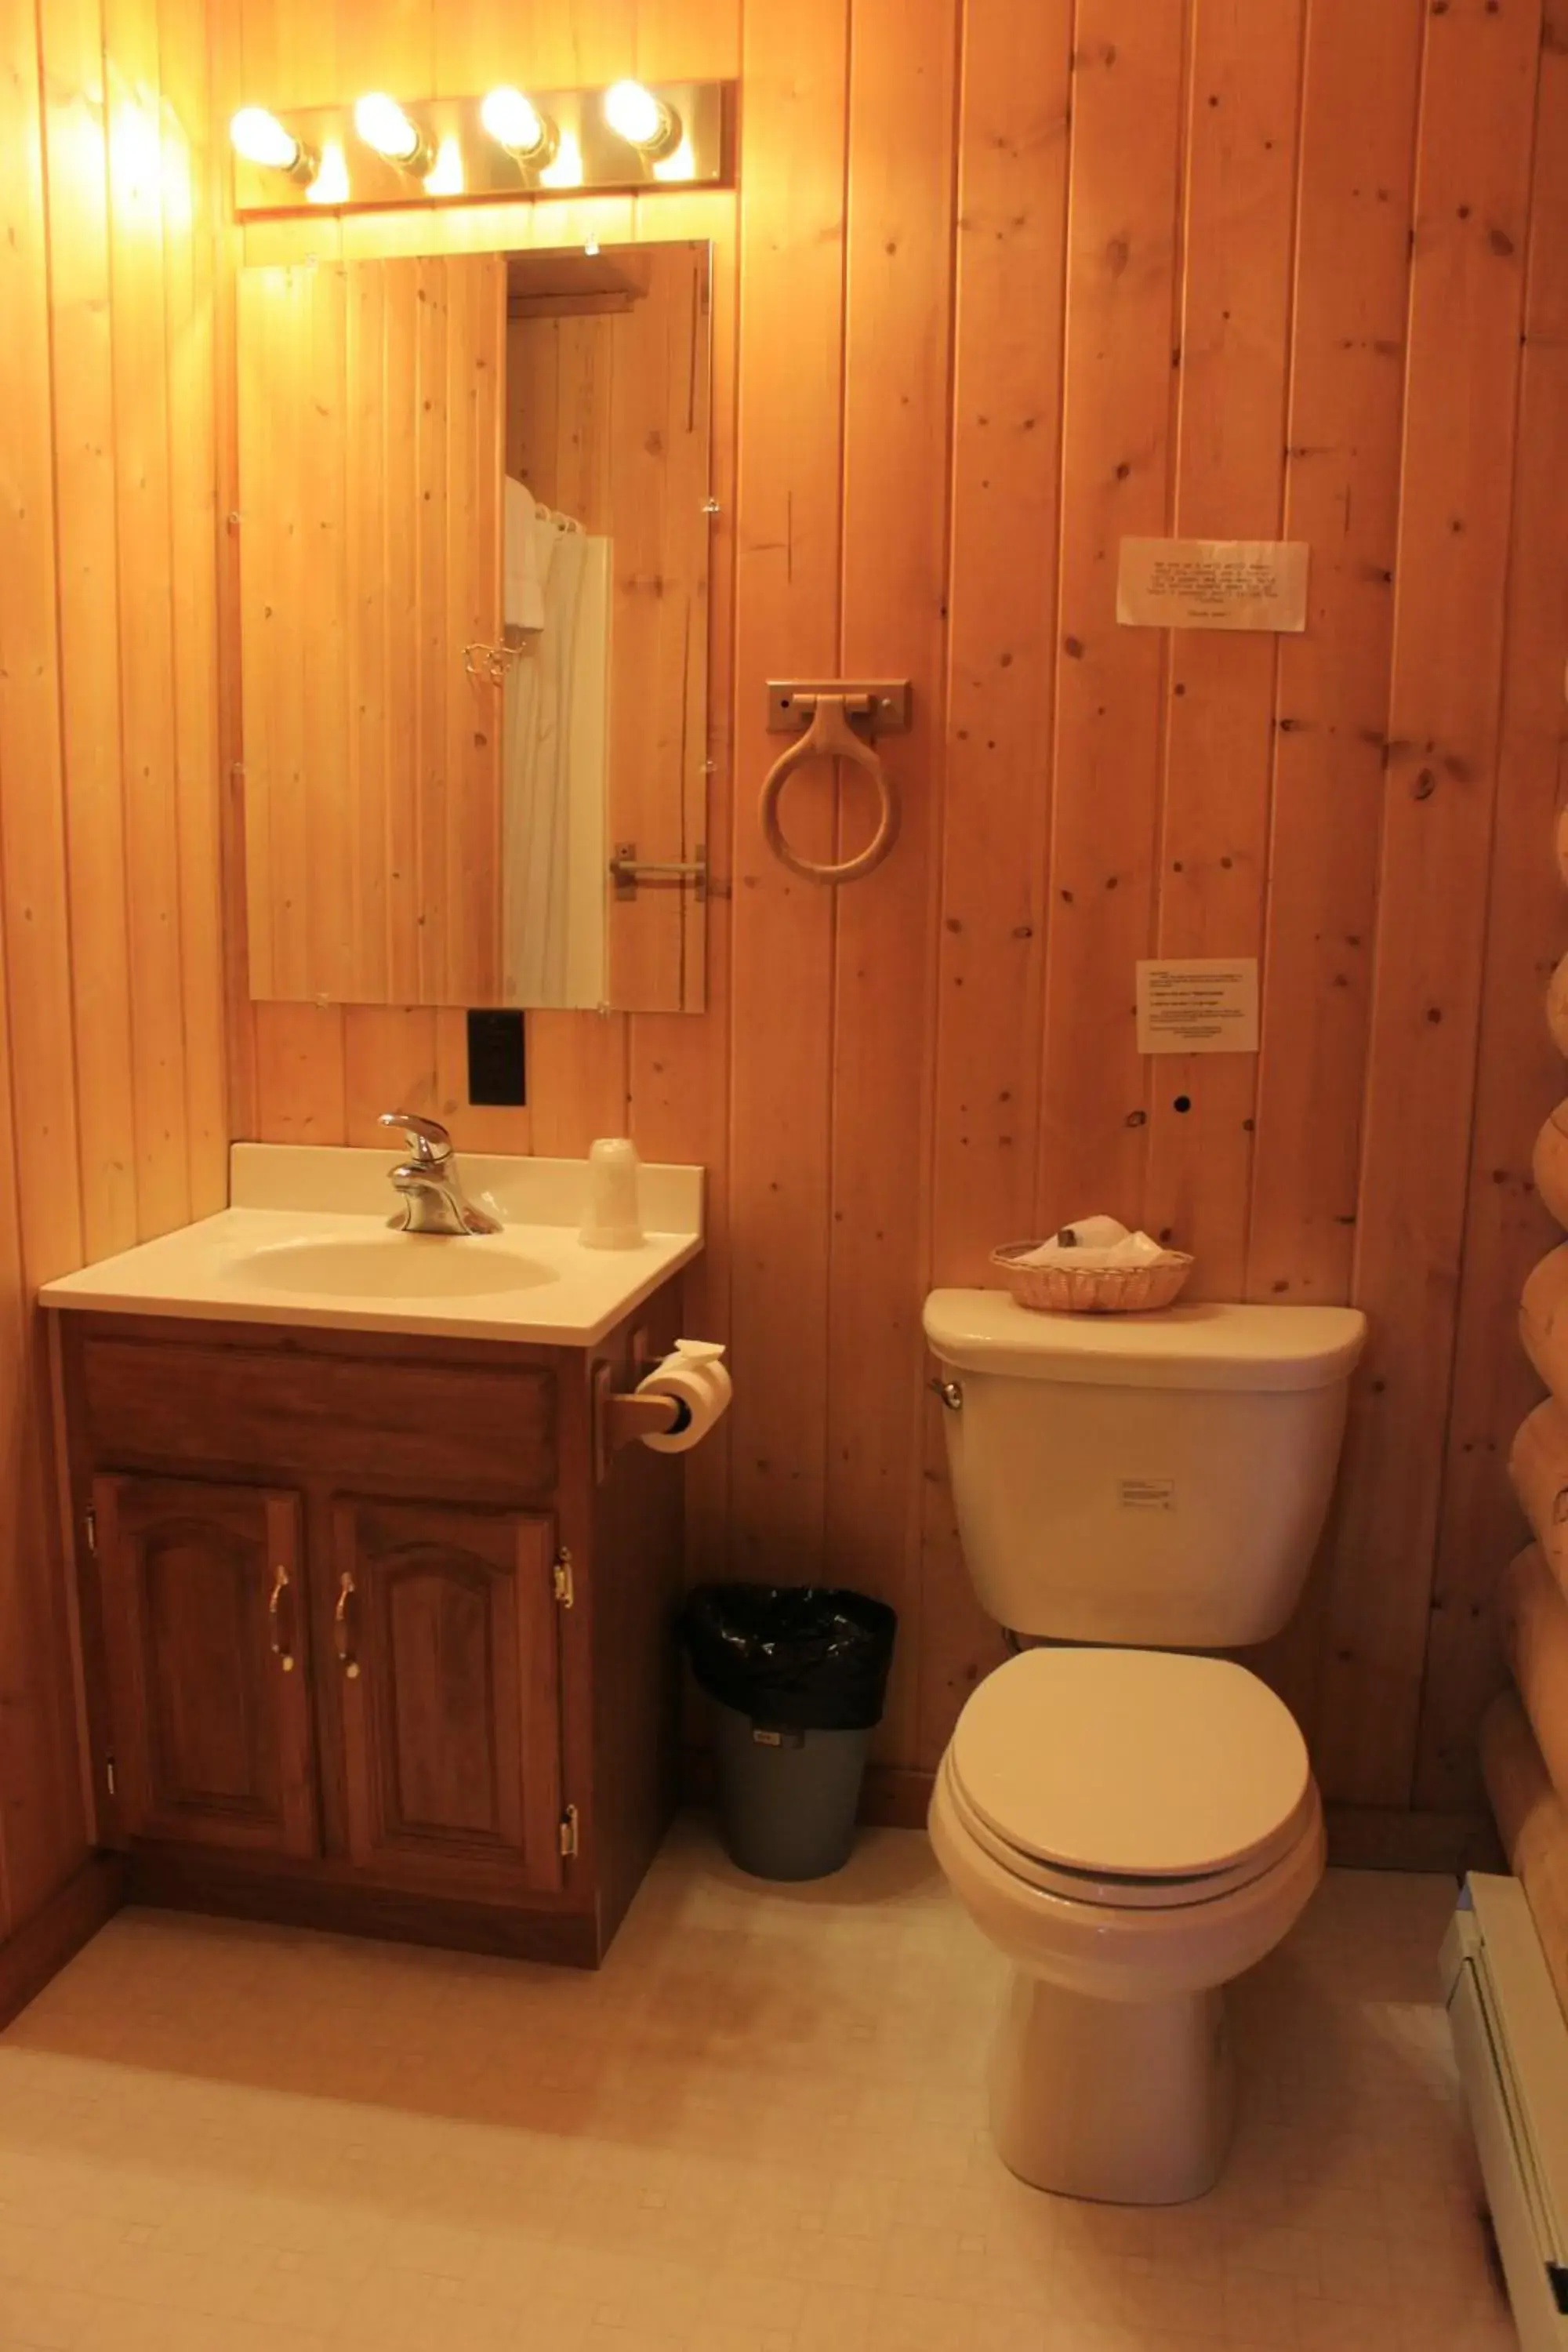 Bathroom in Teton Valley Cabins